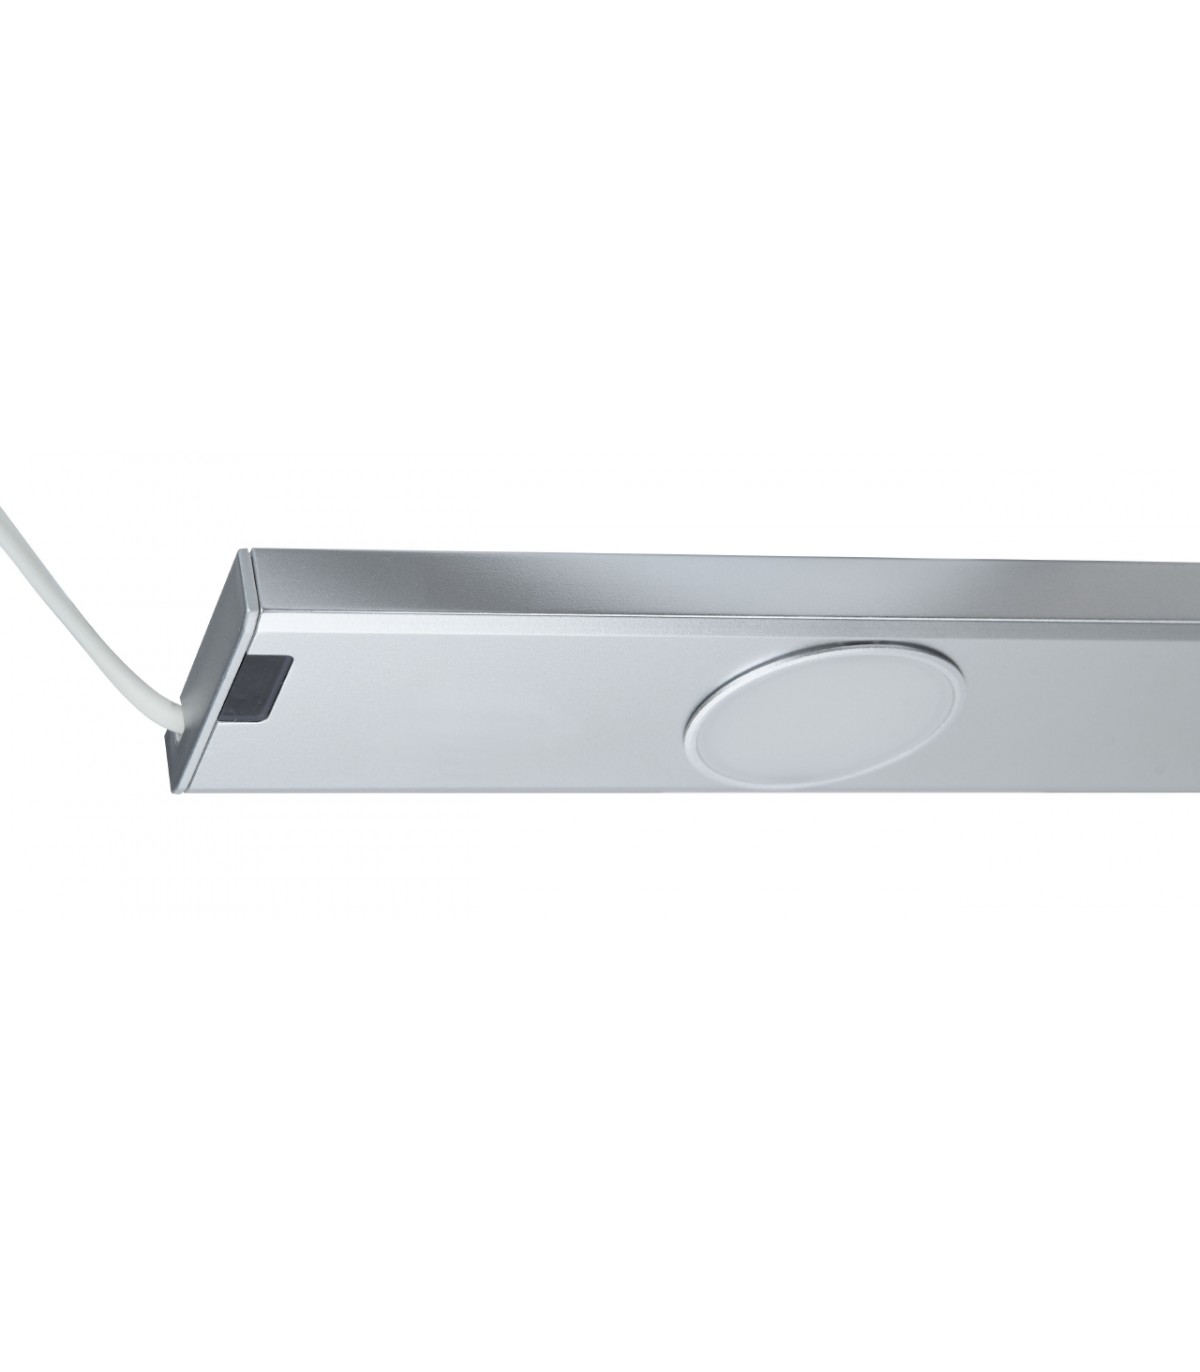 ARIC 5127  Réglette LED sous meuble de cuisine avec interrupteur sensitif  garantie 3 ans